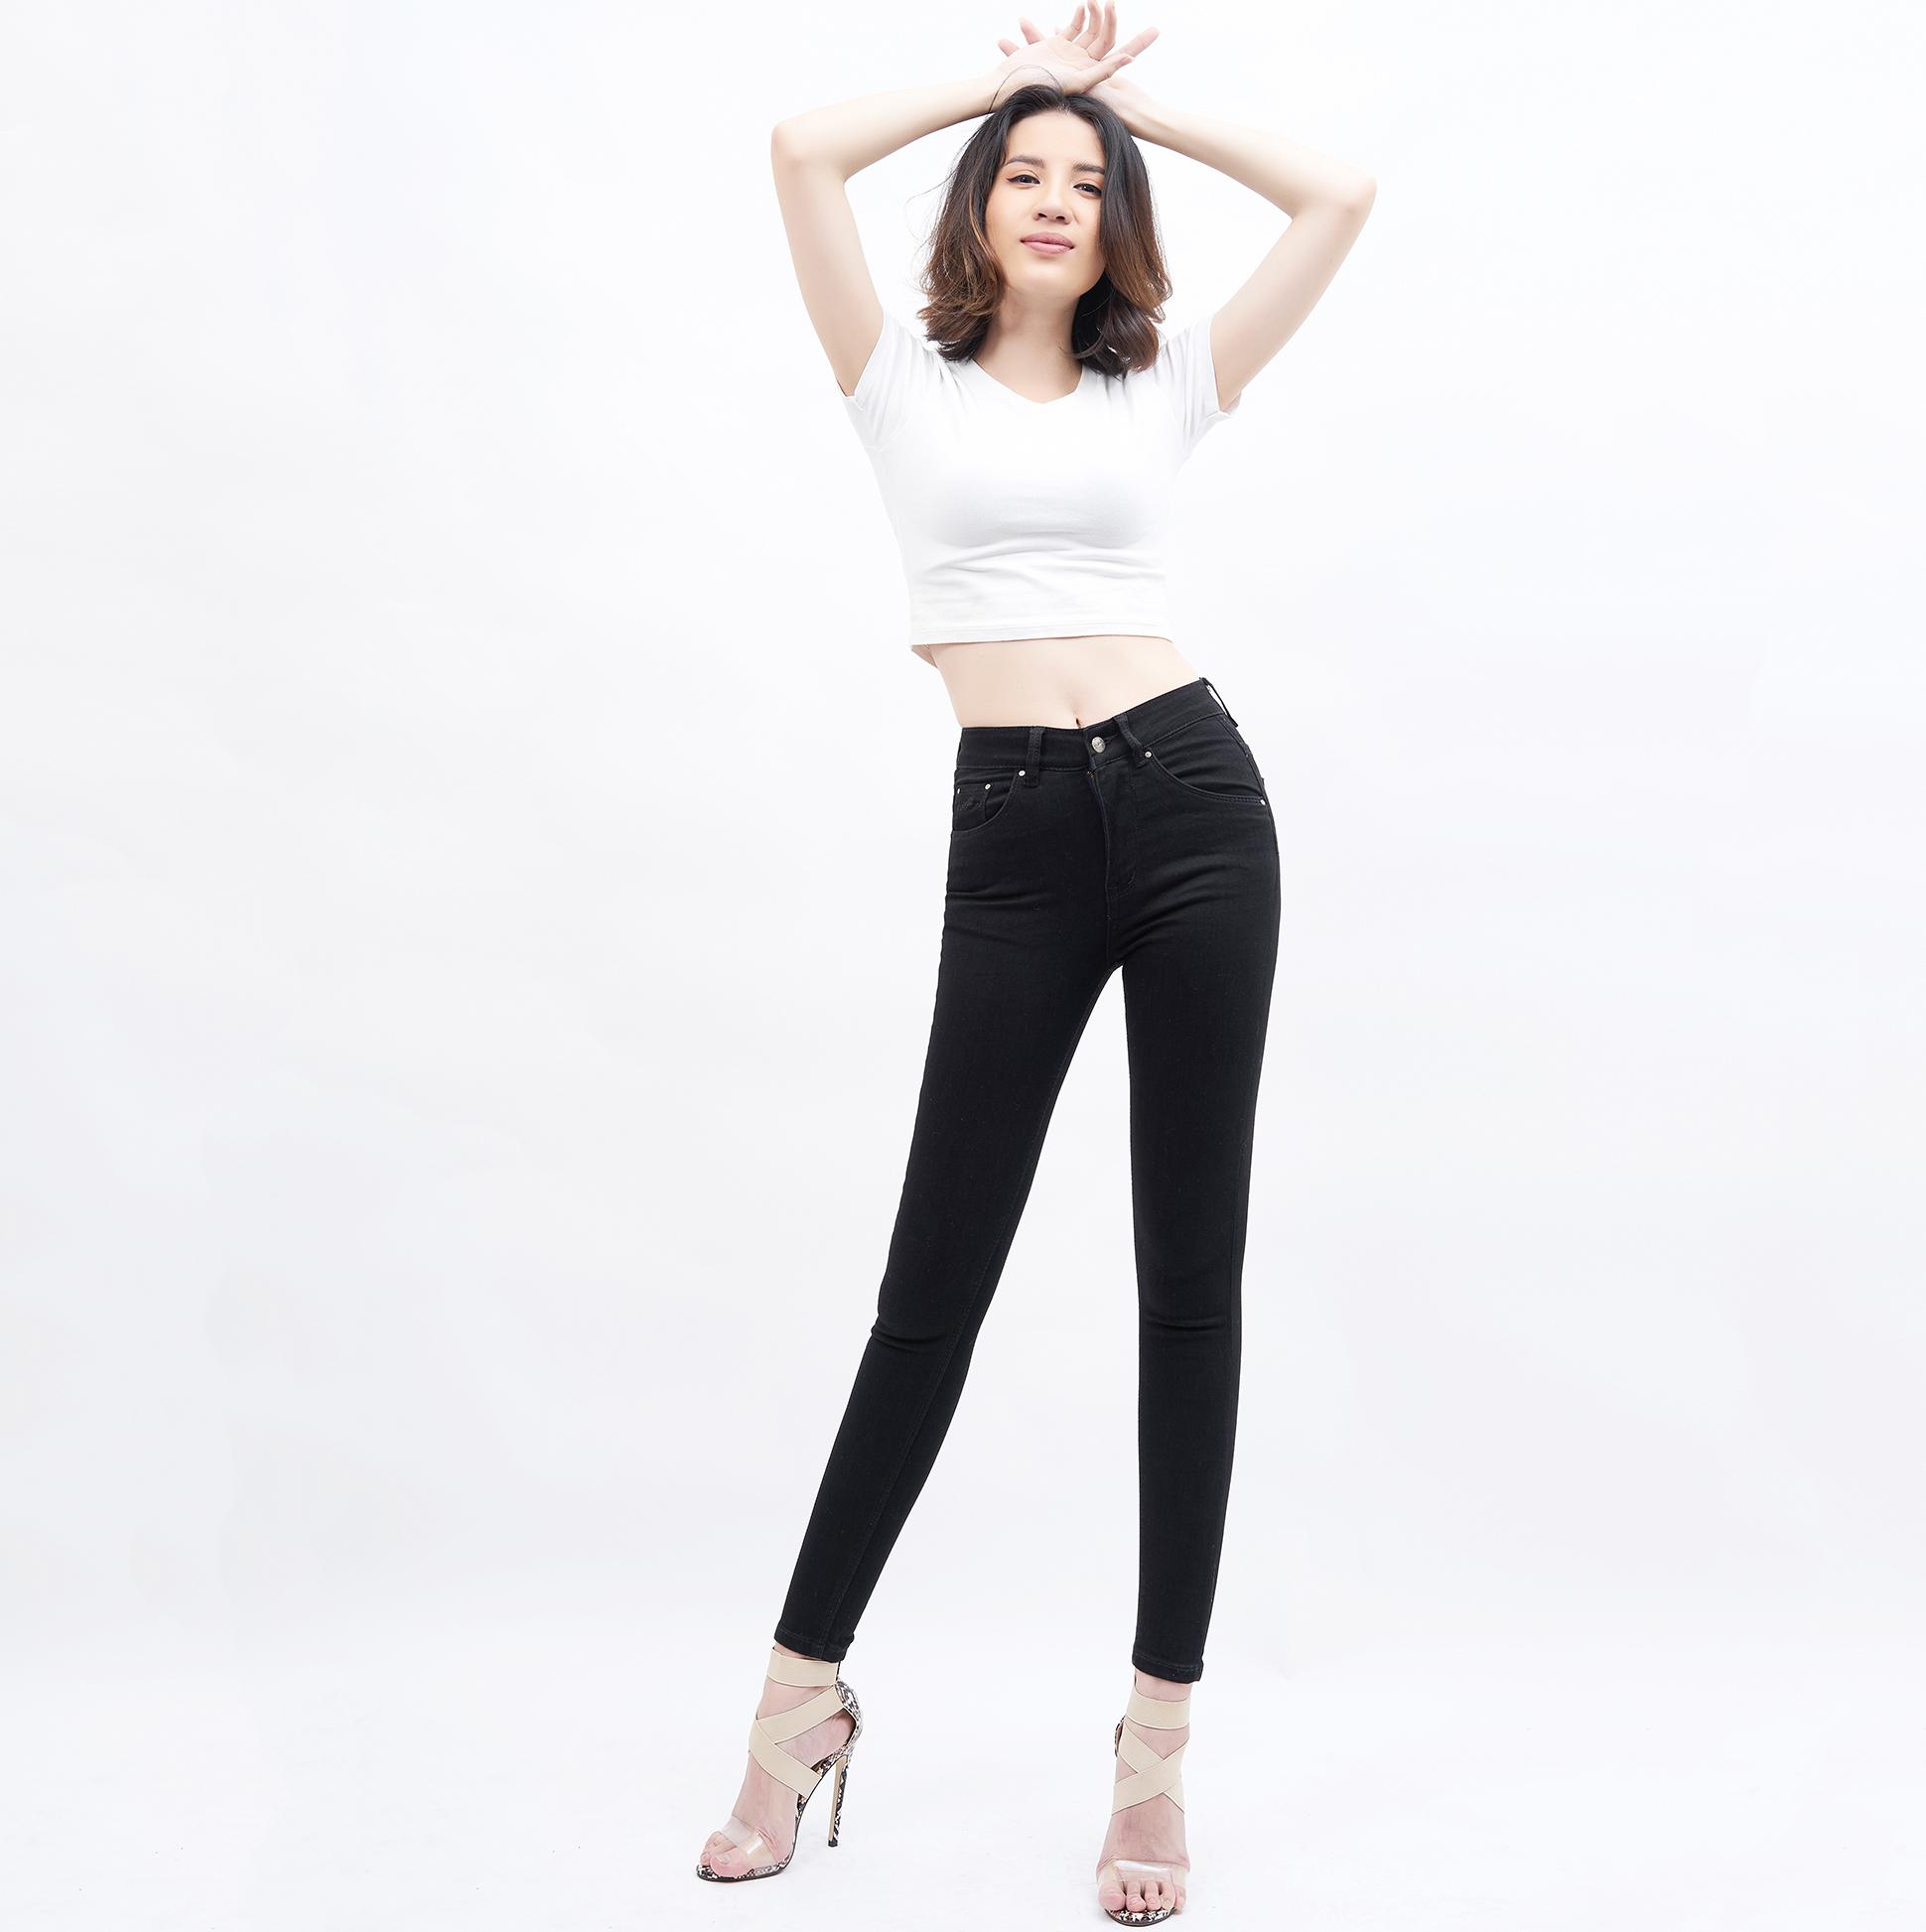 Quần Jean Nữ Pha Tơ Nhân Tạo Lưng Cao Dáng Skinny Aaa Jeans - UCSD Rayon Có Nhiều Màu Size 26 - 32